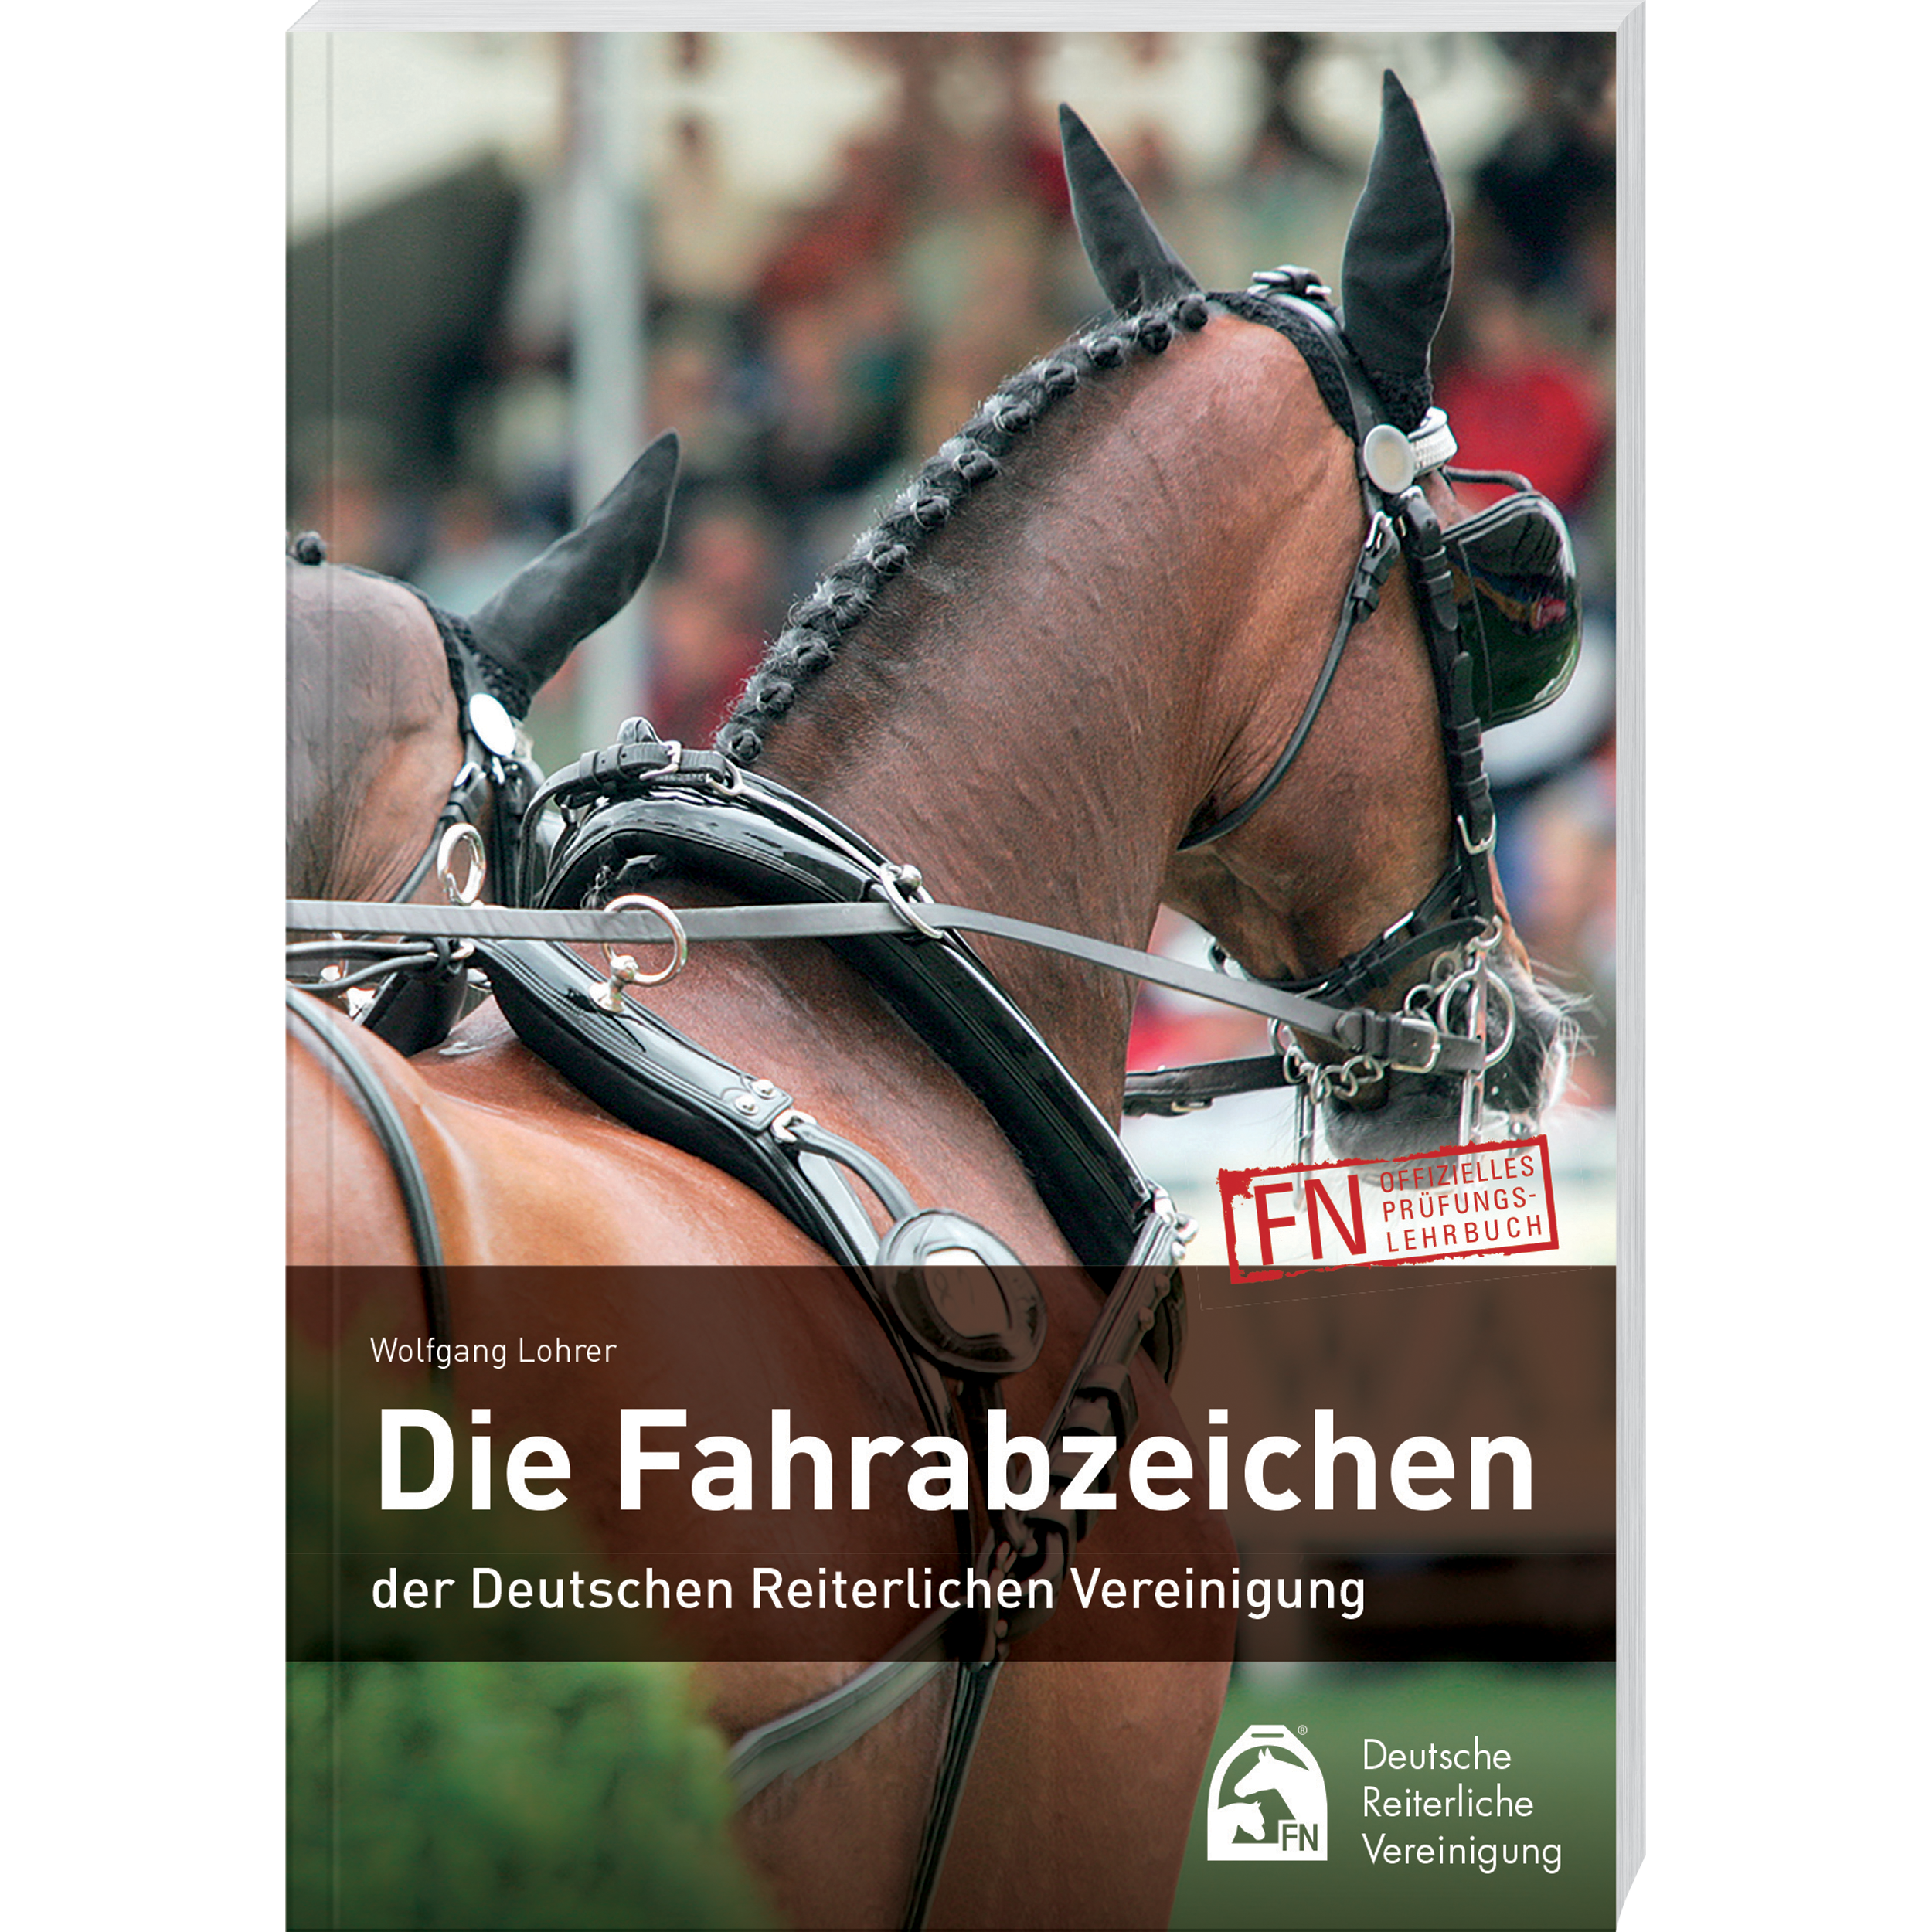 FN-Verlag Prüfungsbuch “Die Fahrabzeichen”